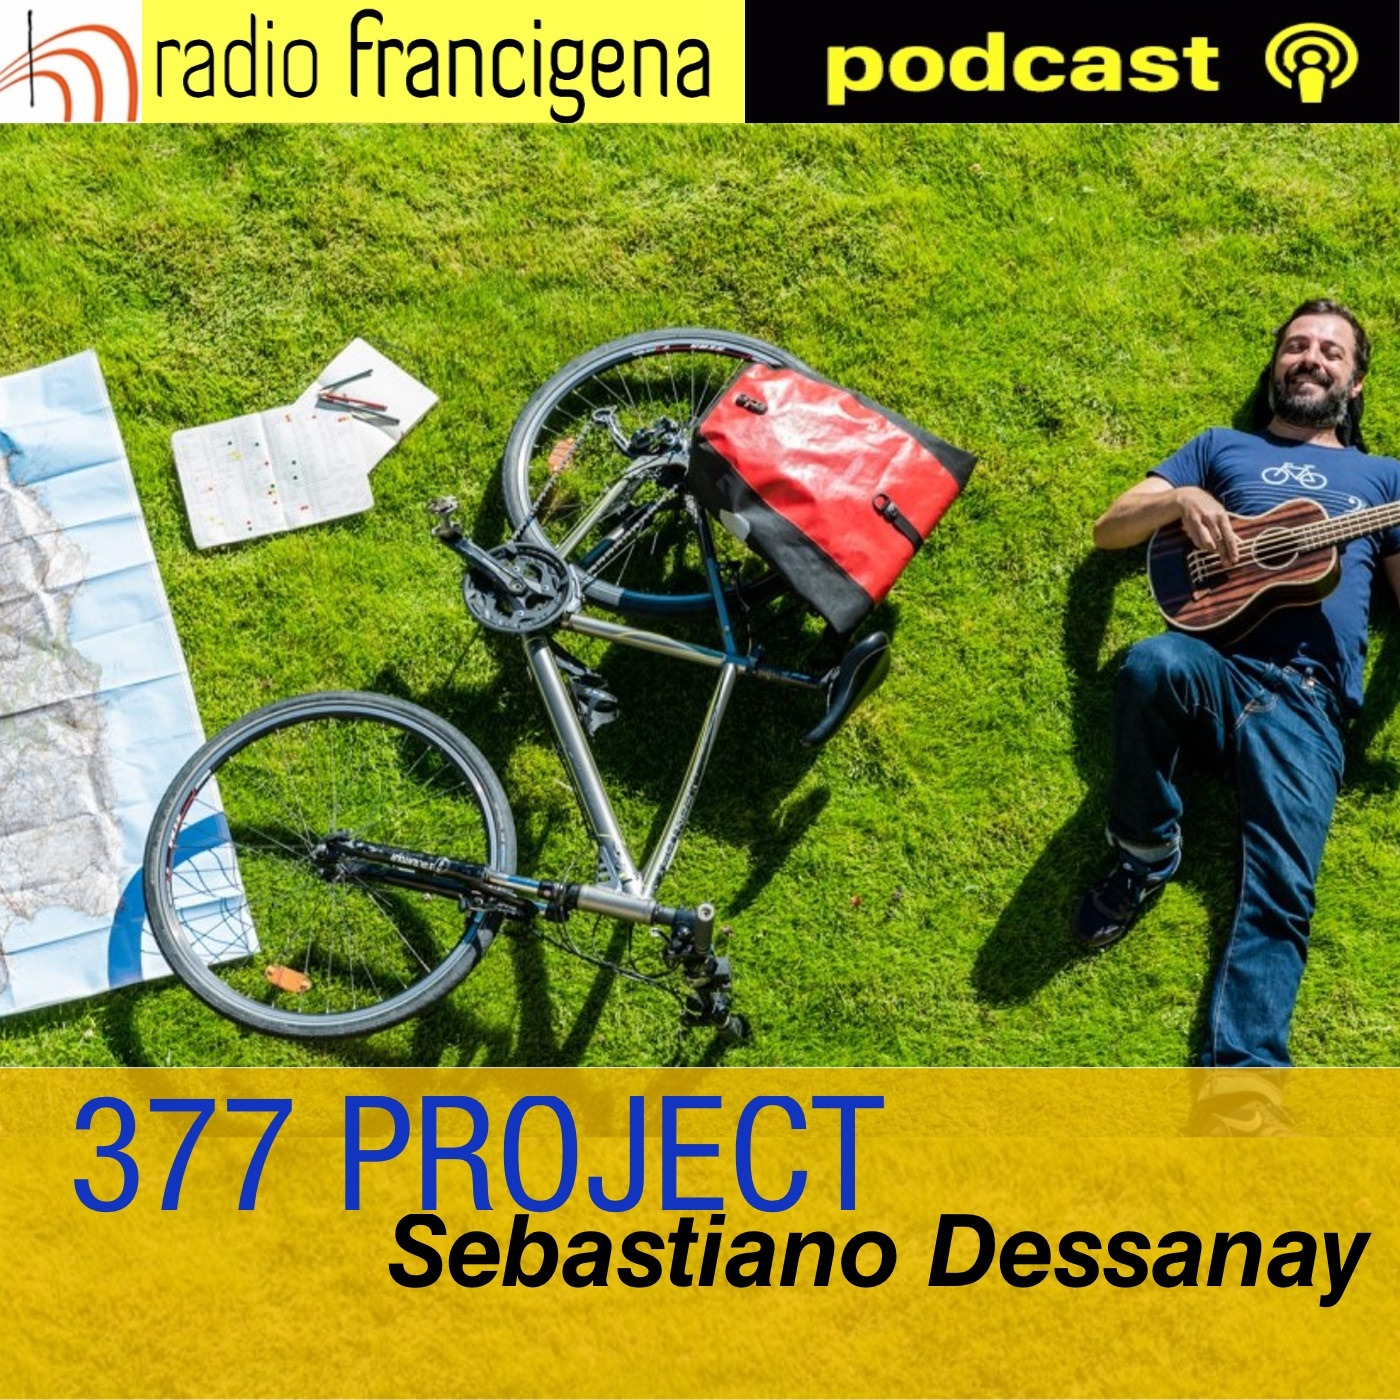 377 PROJECT - Sebastiano Dessanay - 05